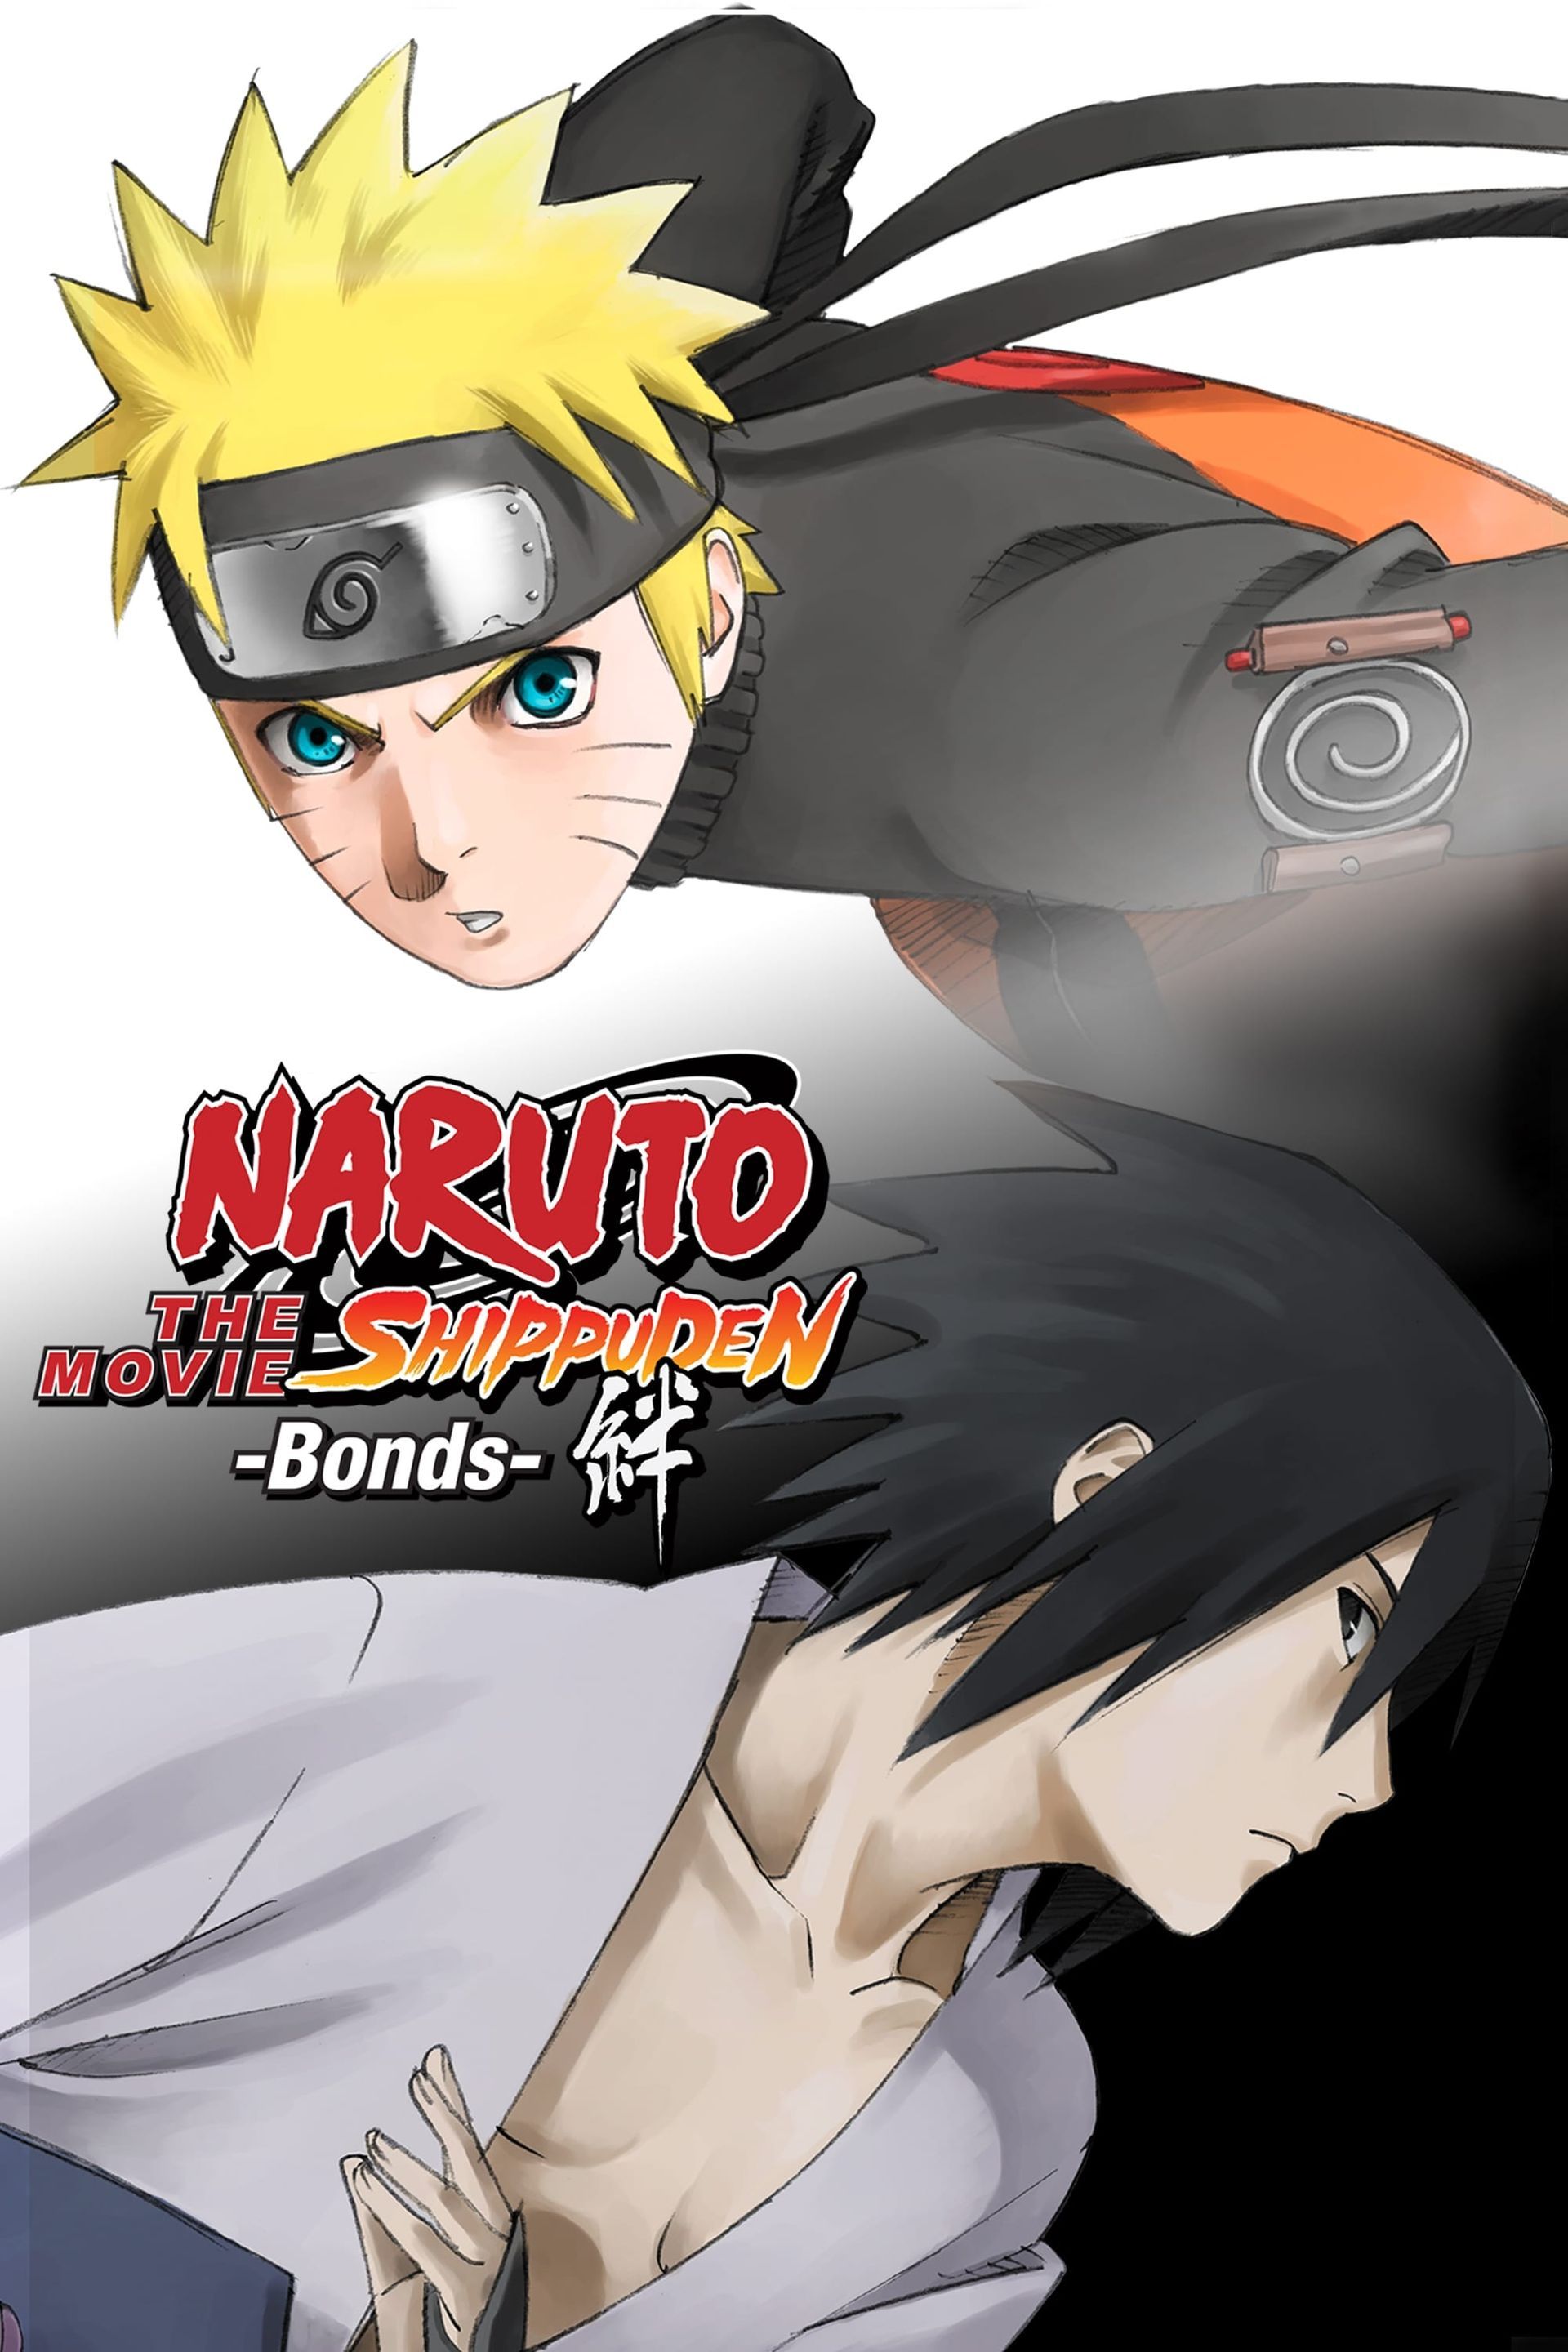 Naruto.The.Movie-.Road.To.Ninja.full.1209463